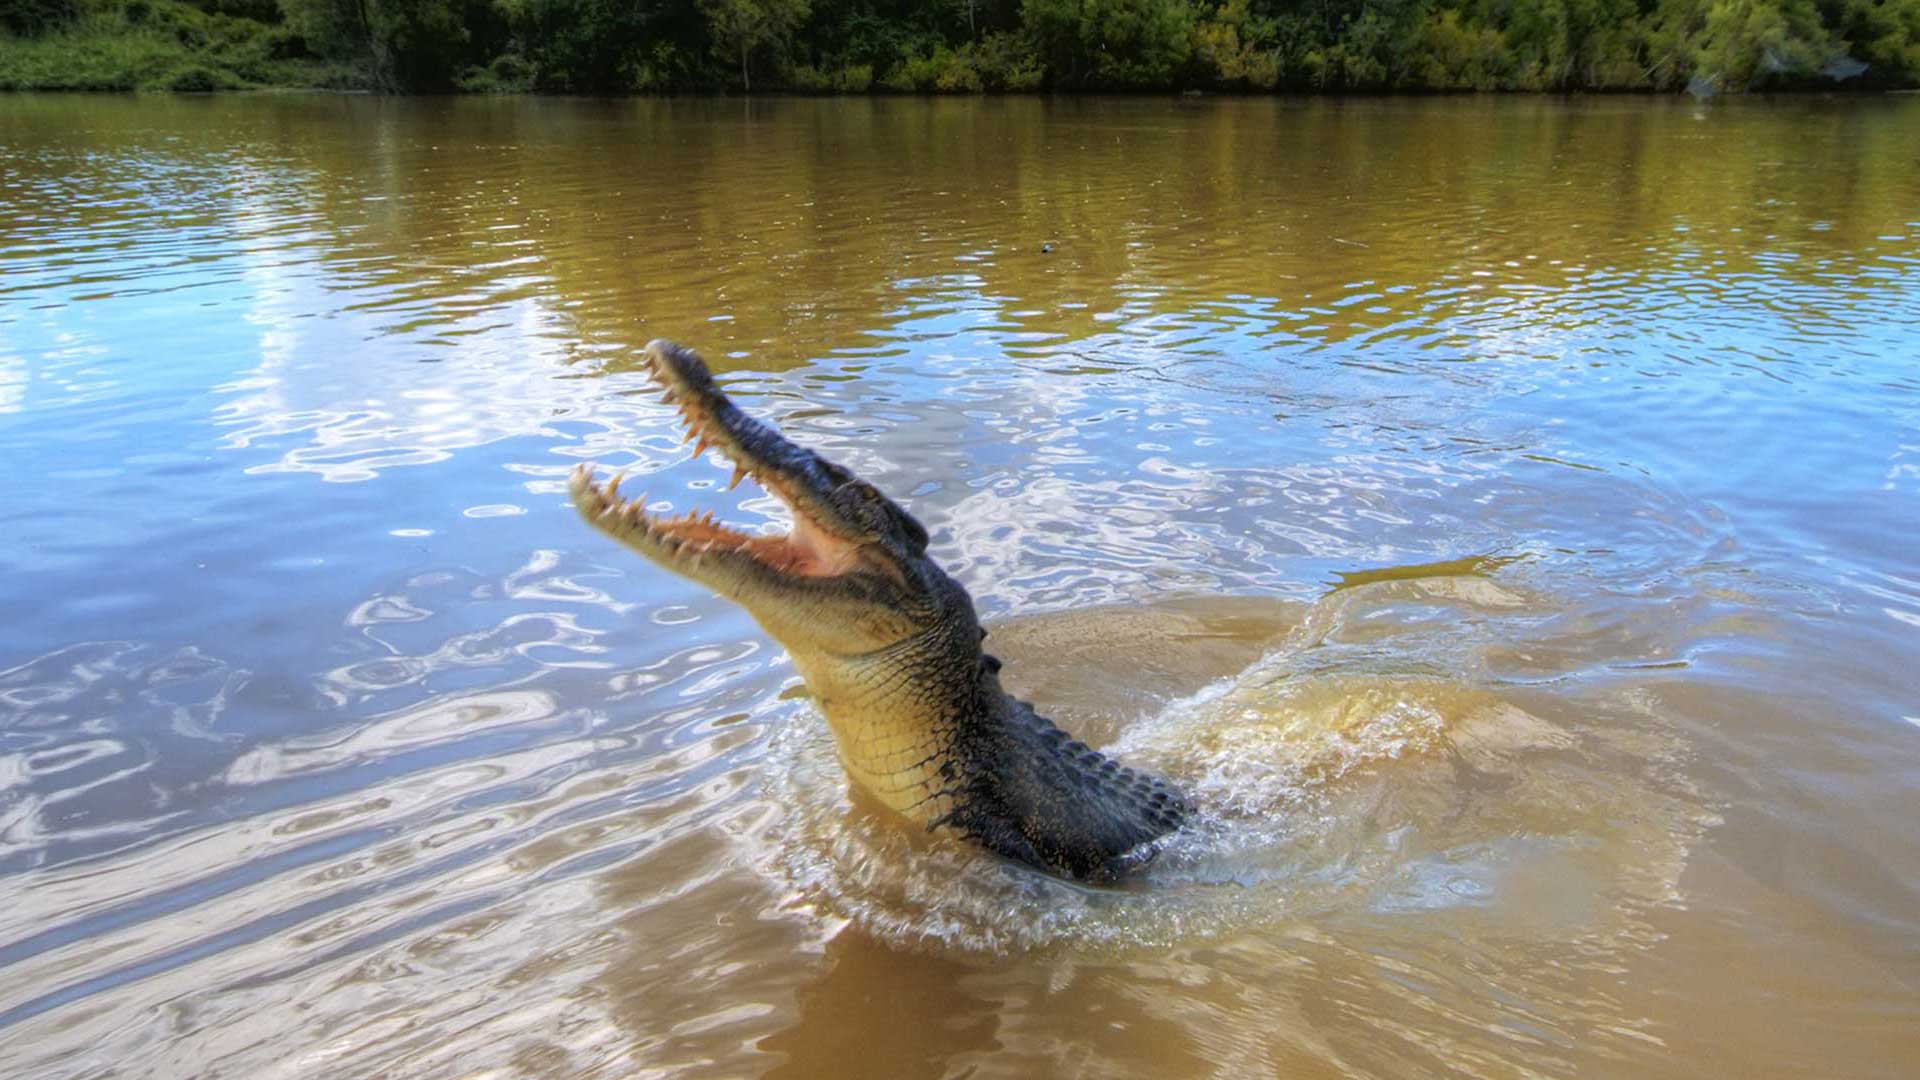 Darwin City Sights & Jumping Crocs